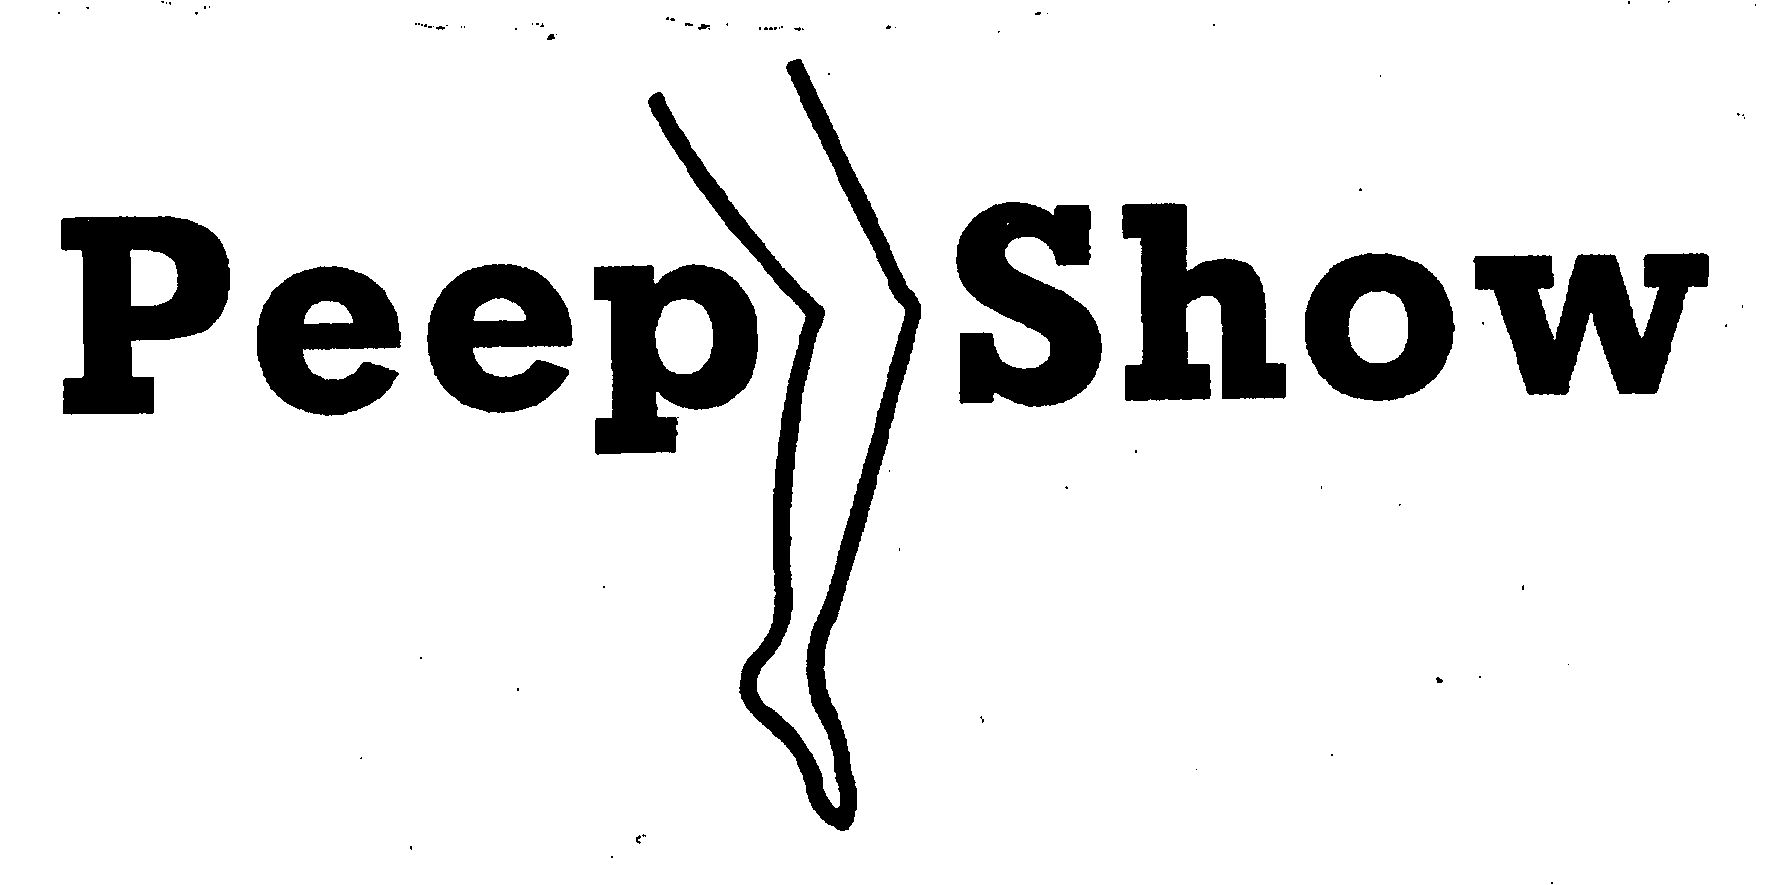 PEEP SHOW